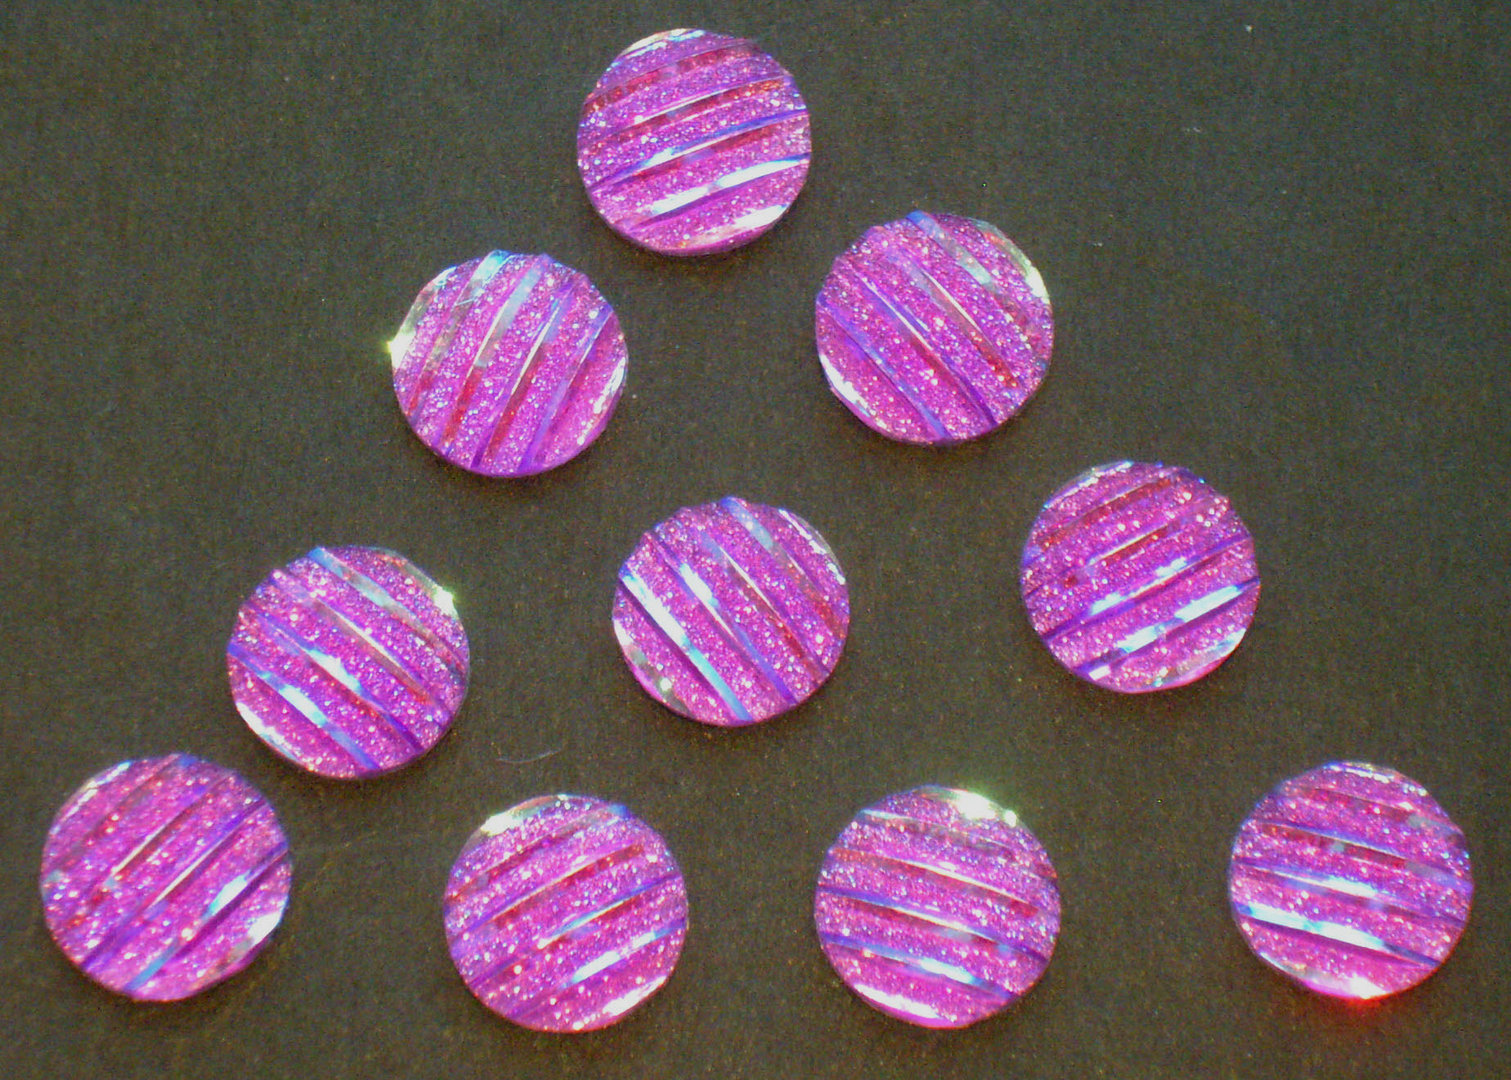 10 Schmuck Deko Steine Violett changierend mit Glitzer - Effekten Rückseite Silber Ø 9,5mm x 2mm